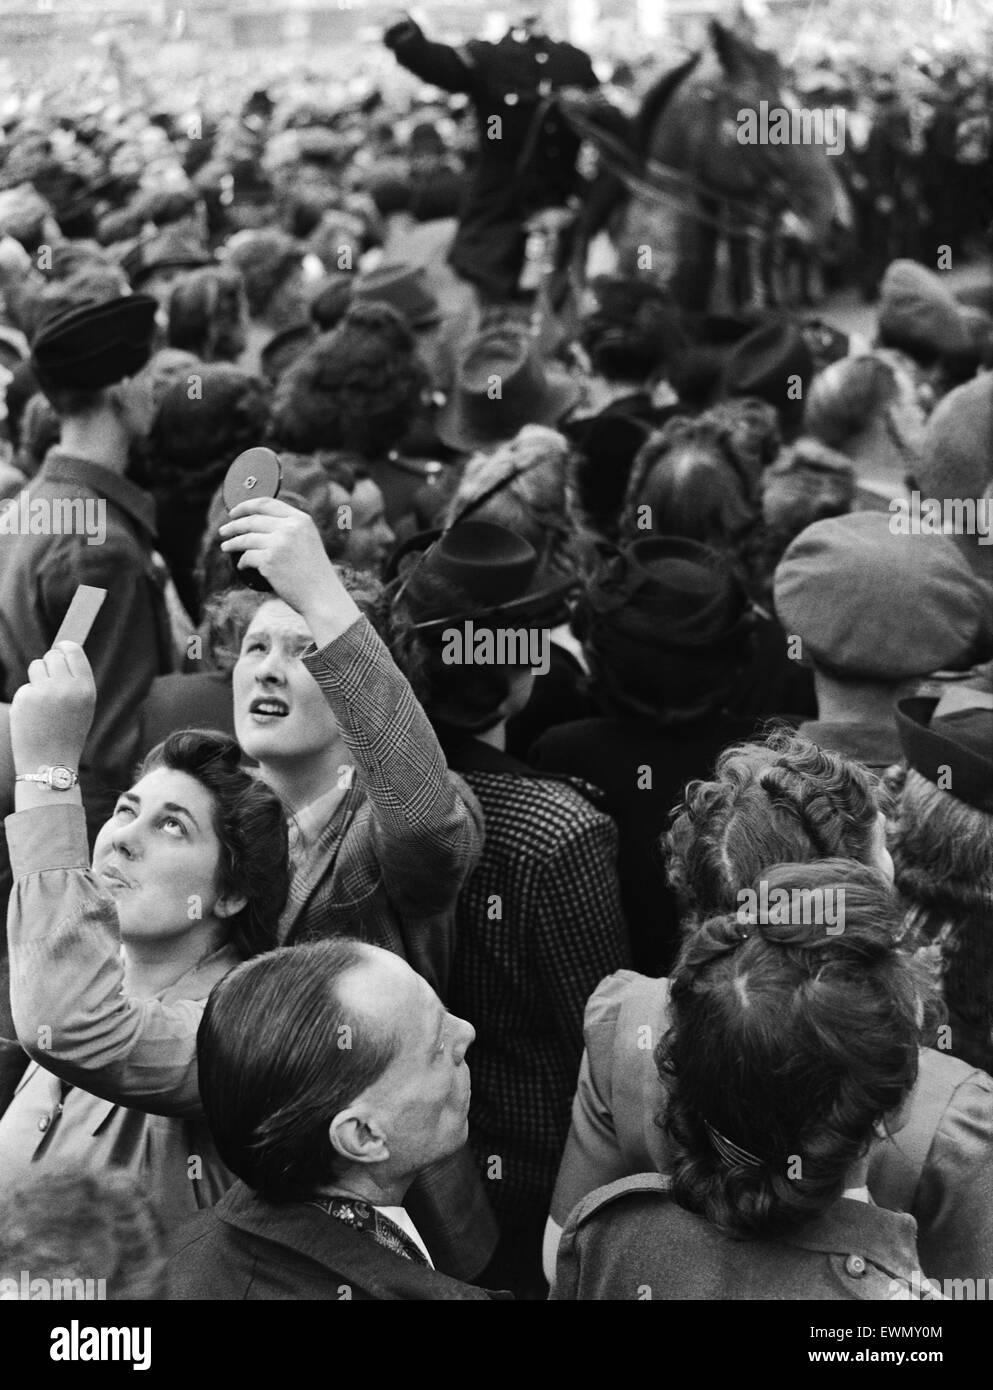 VE Day Feierlichkeiten in London am Ende des zweiten Weltkriegs.  Riesige Menschenmengen versammelten sich während der Feierlichkeiten in Westminster.  8. Mai 1945. Stockfoto